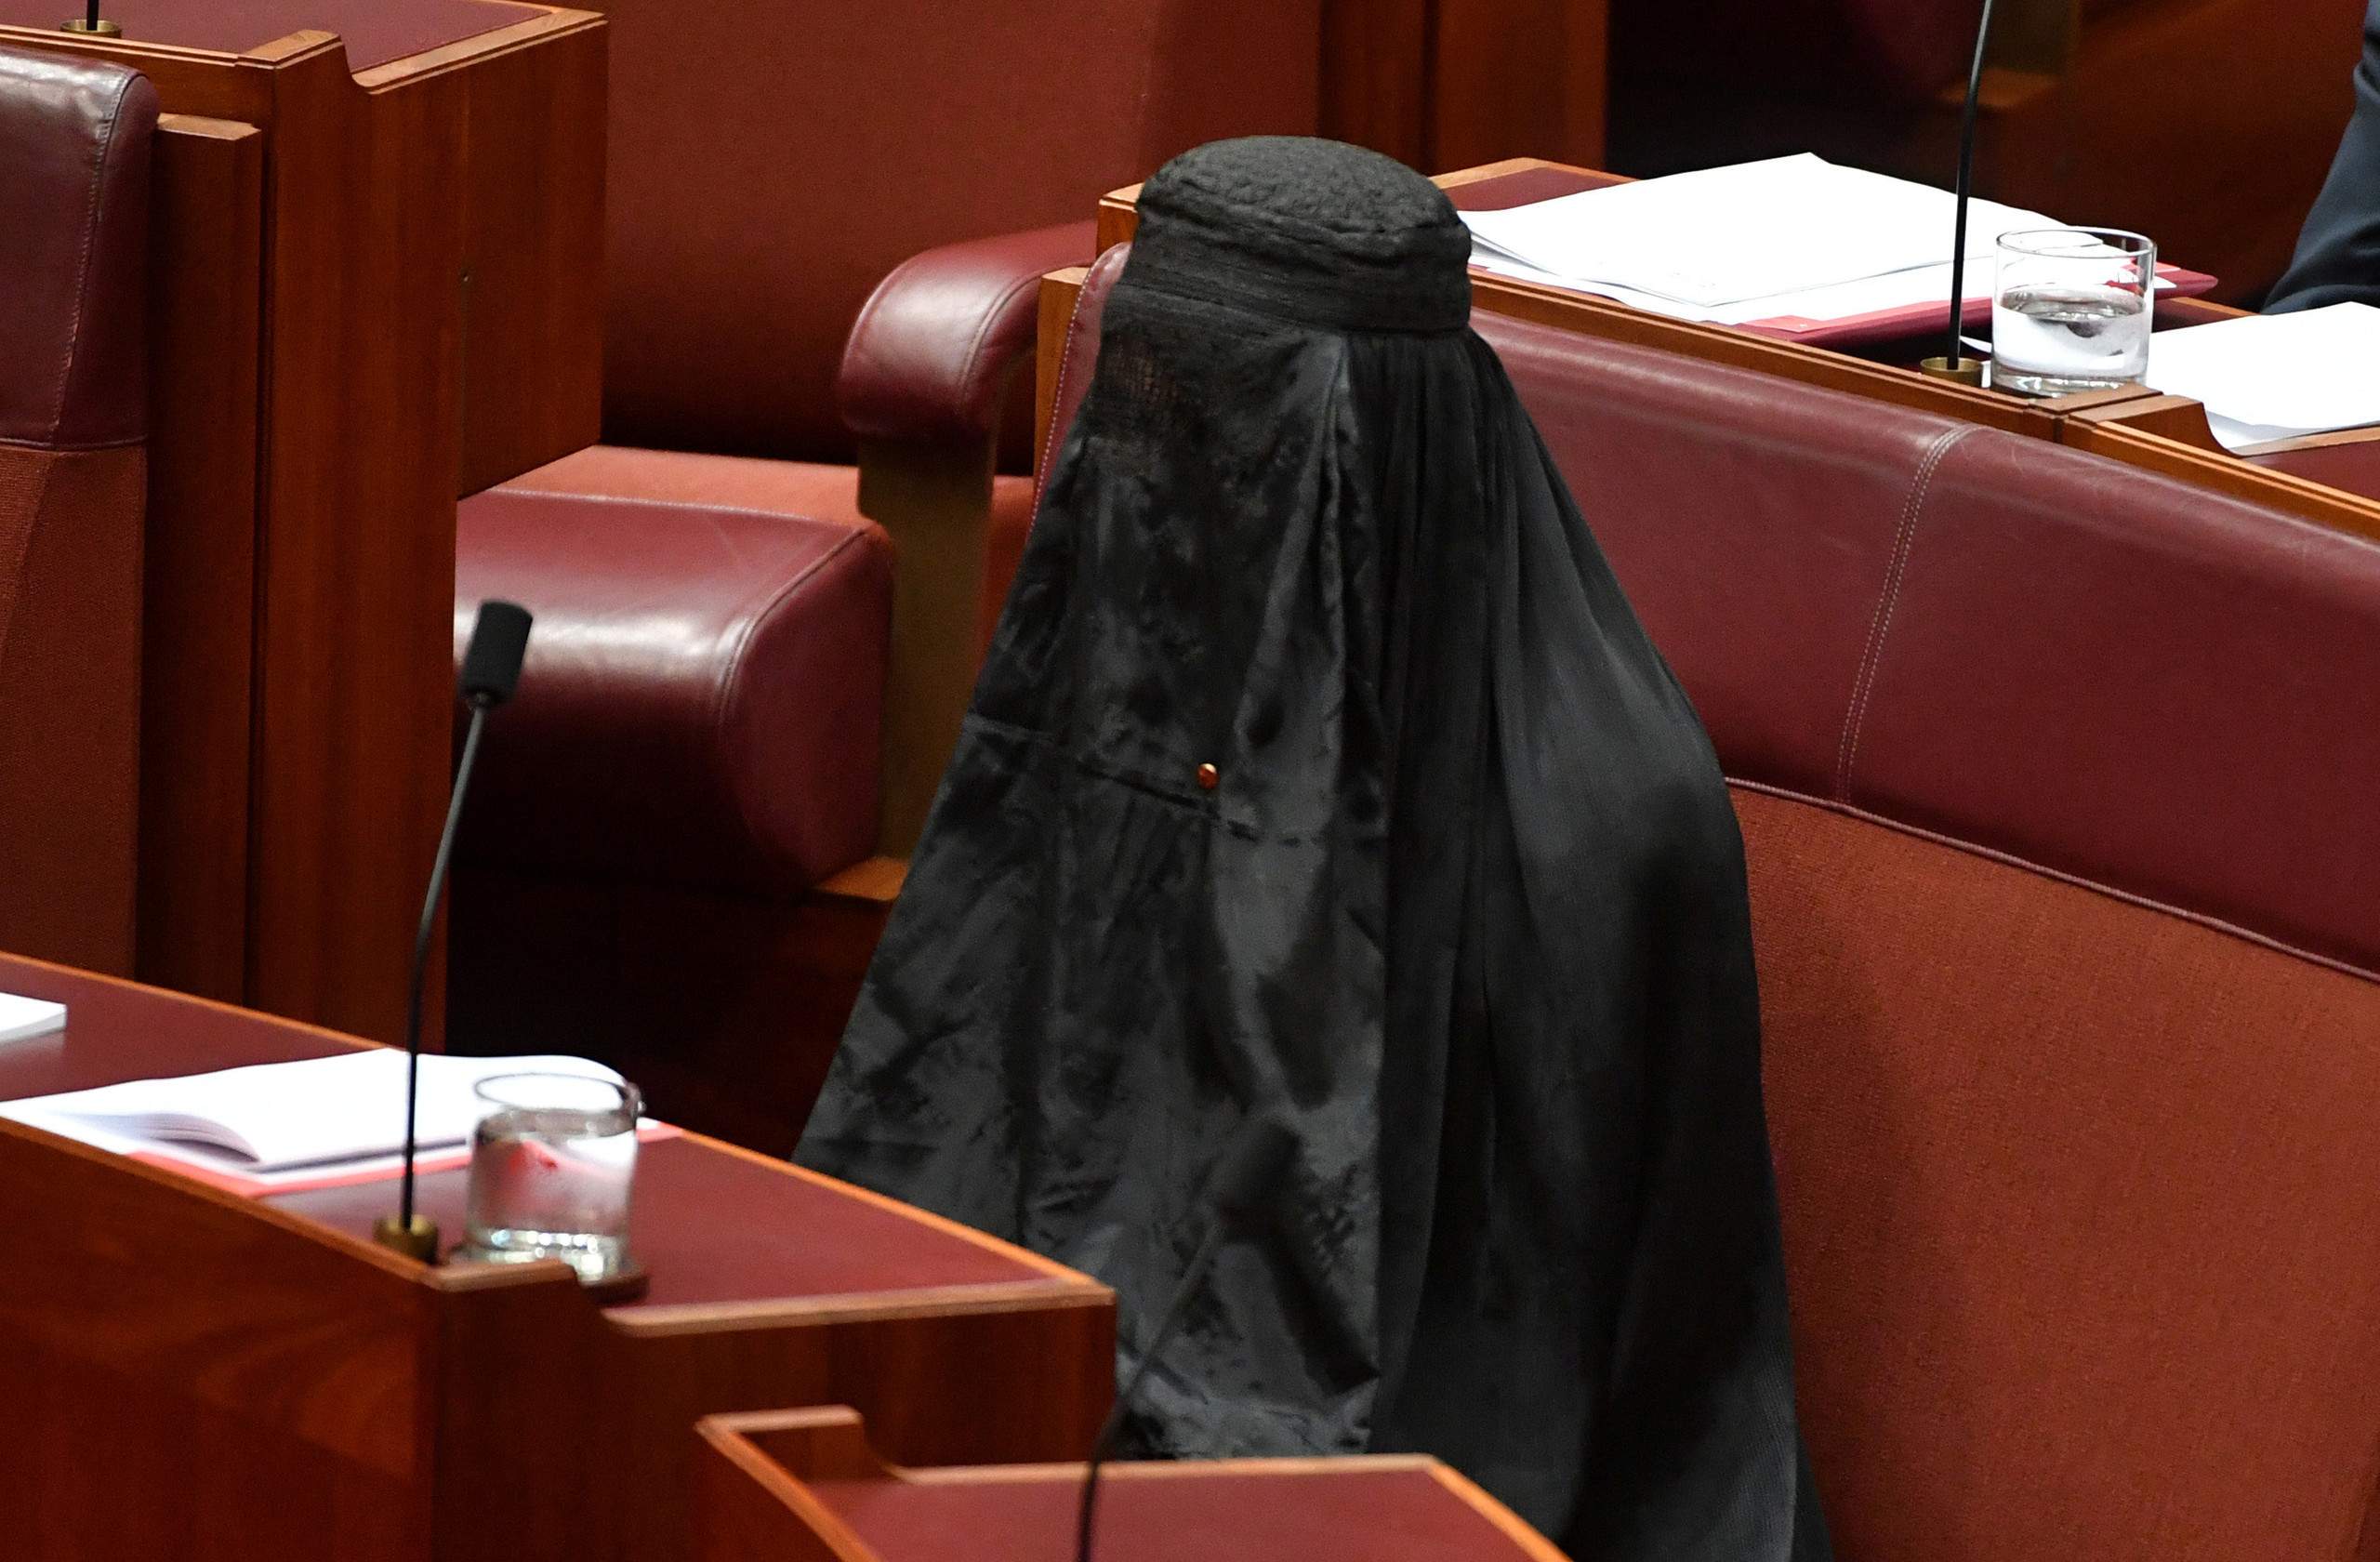 لماذا ارتدت هذه النائب الأسترالية البرقع في البرلمان؟